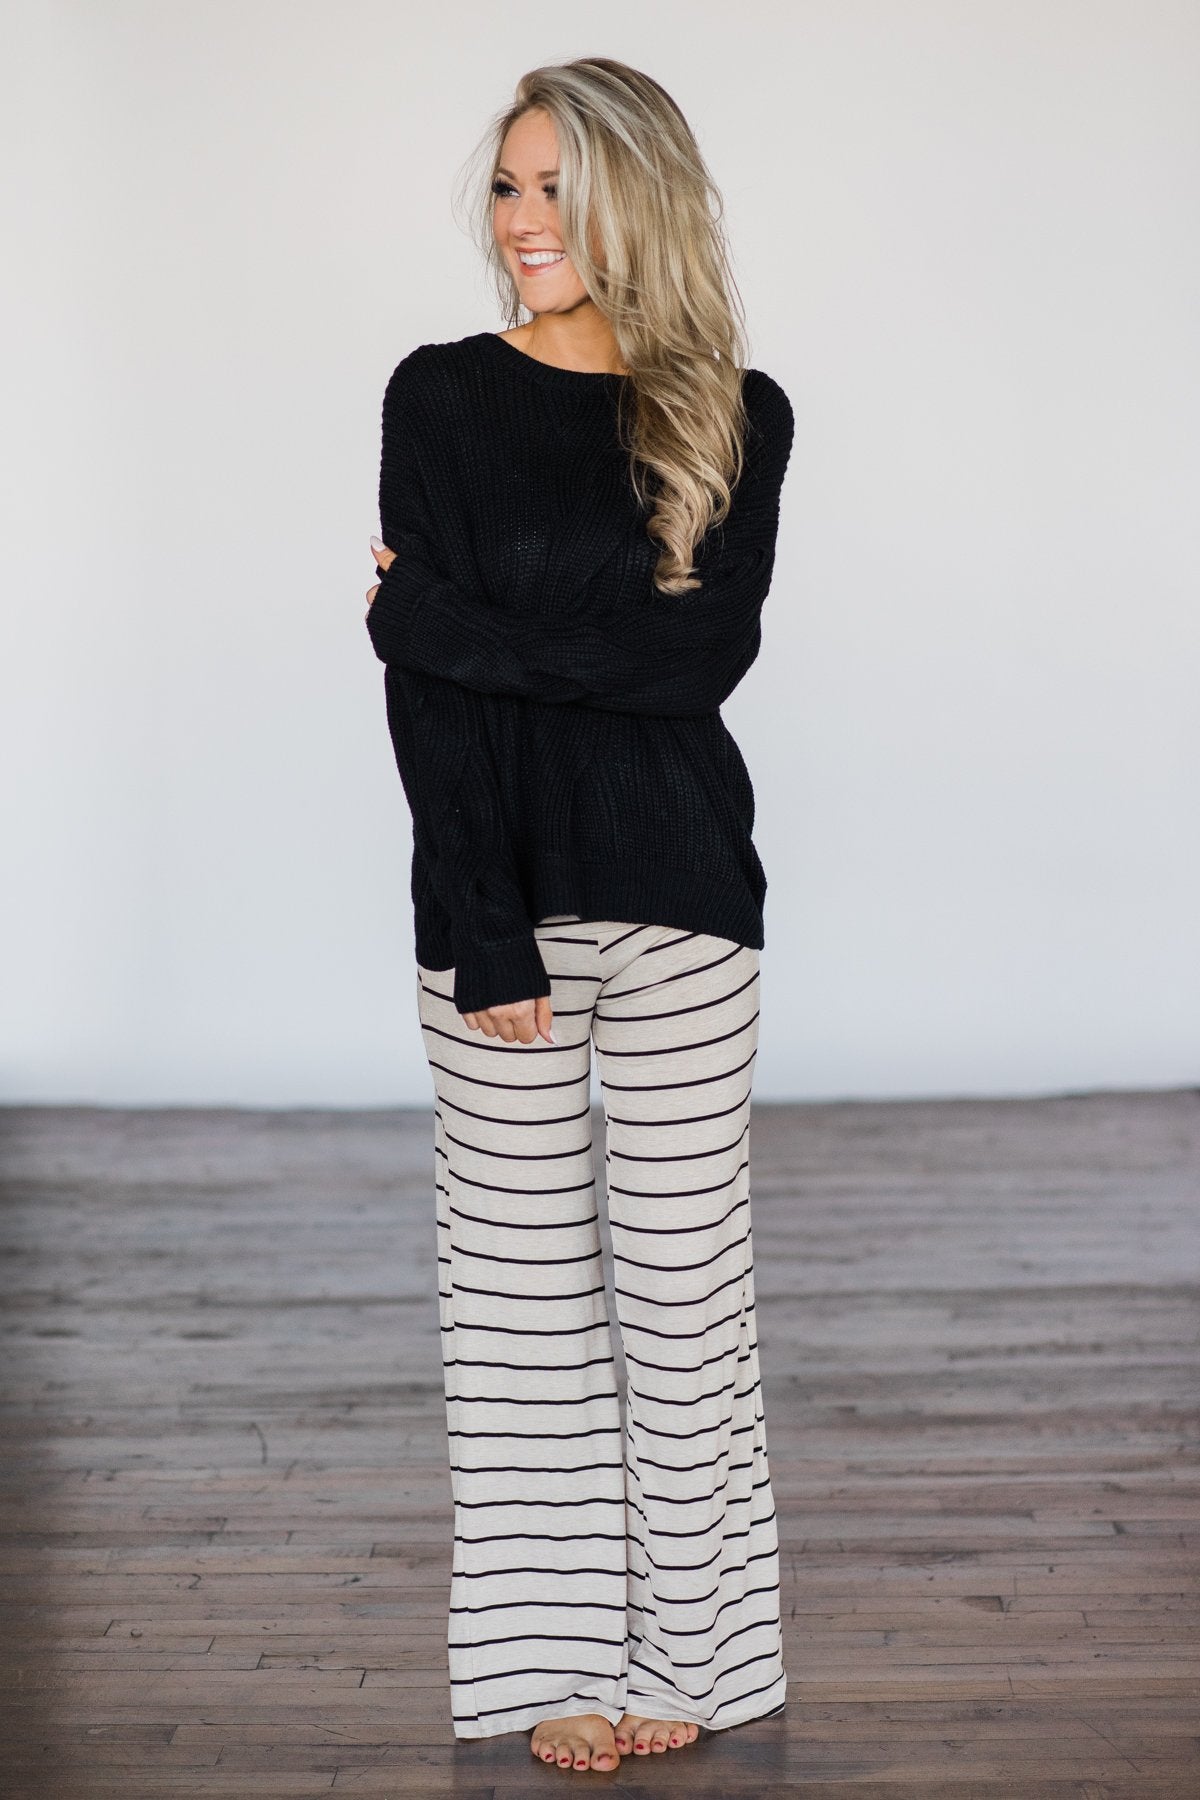 Tan & Black Striped Lounge Pants